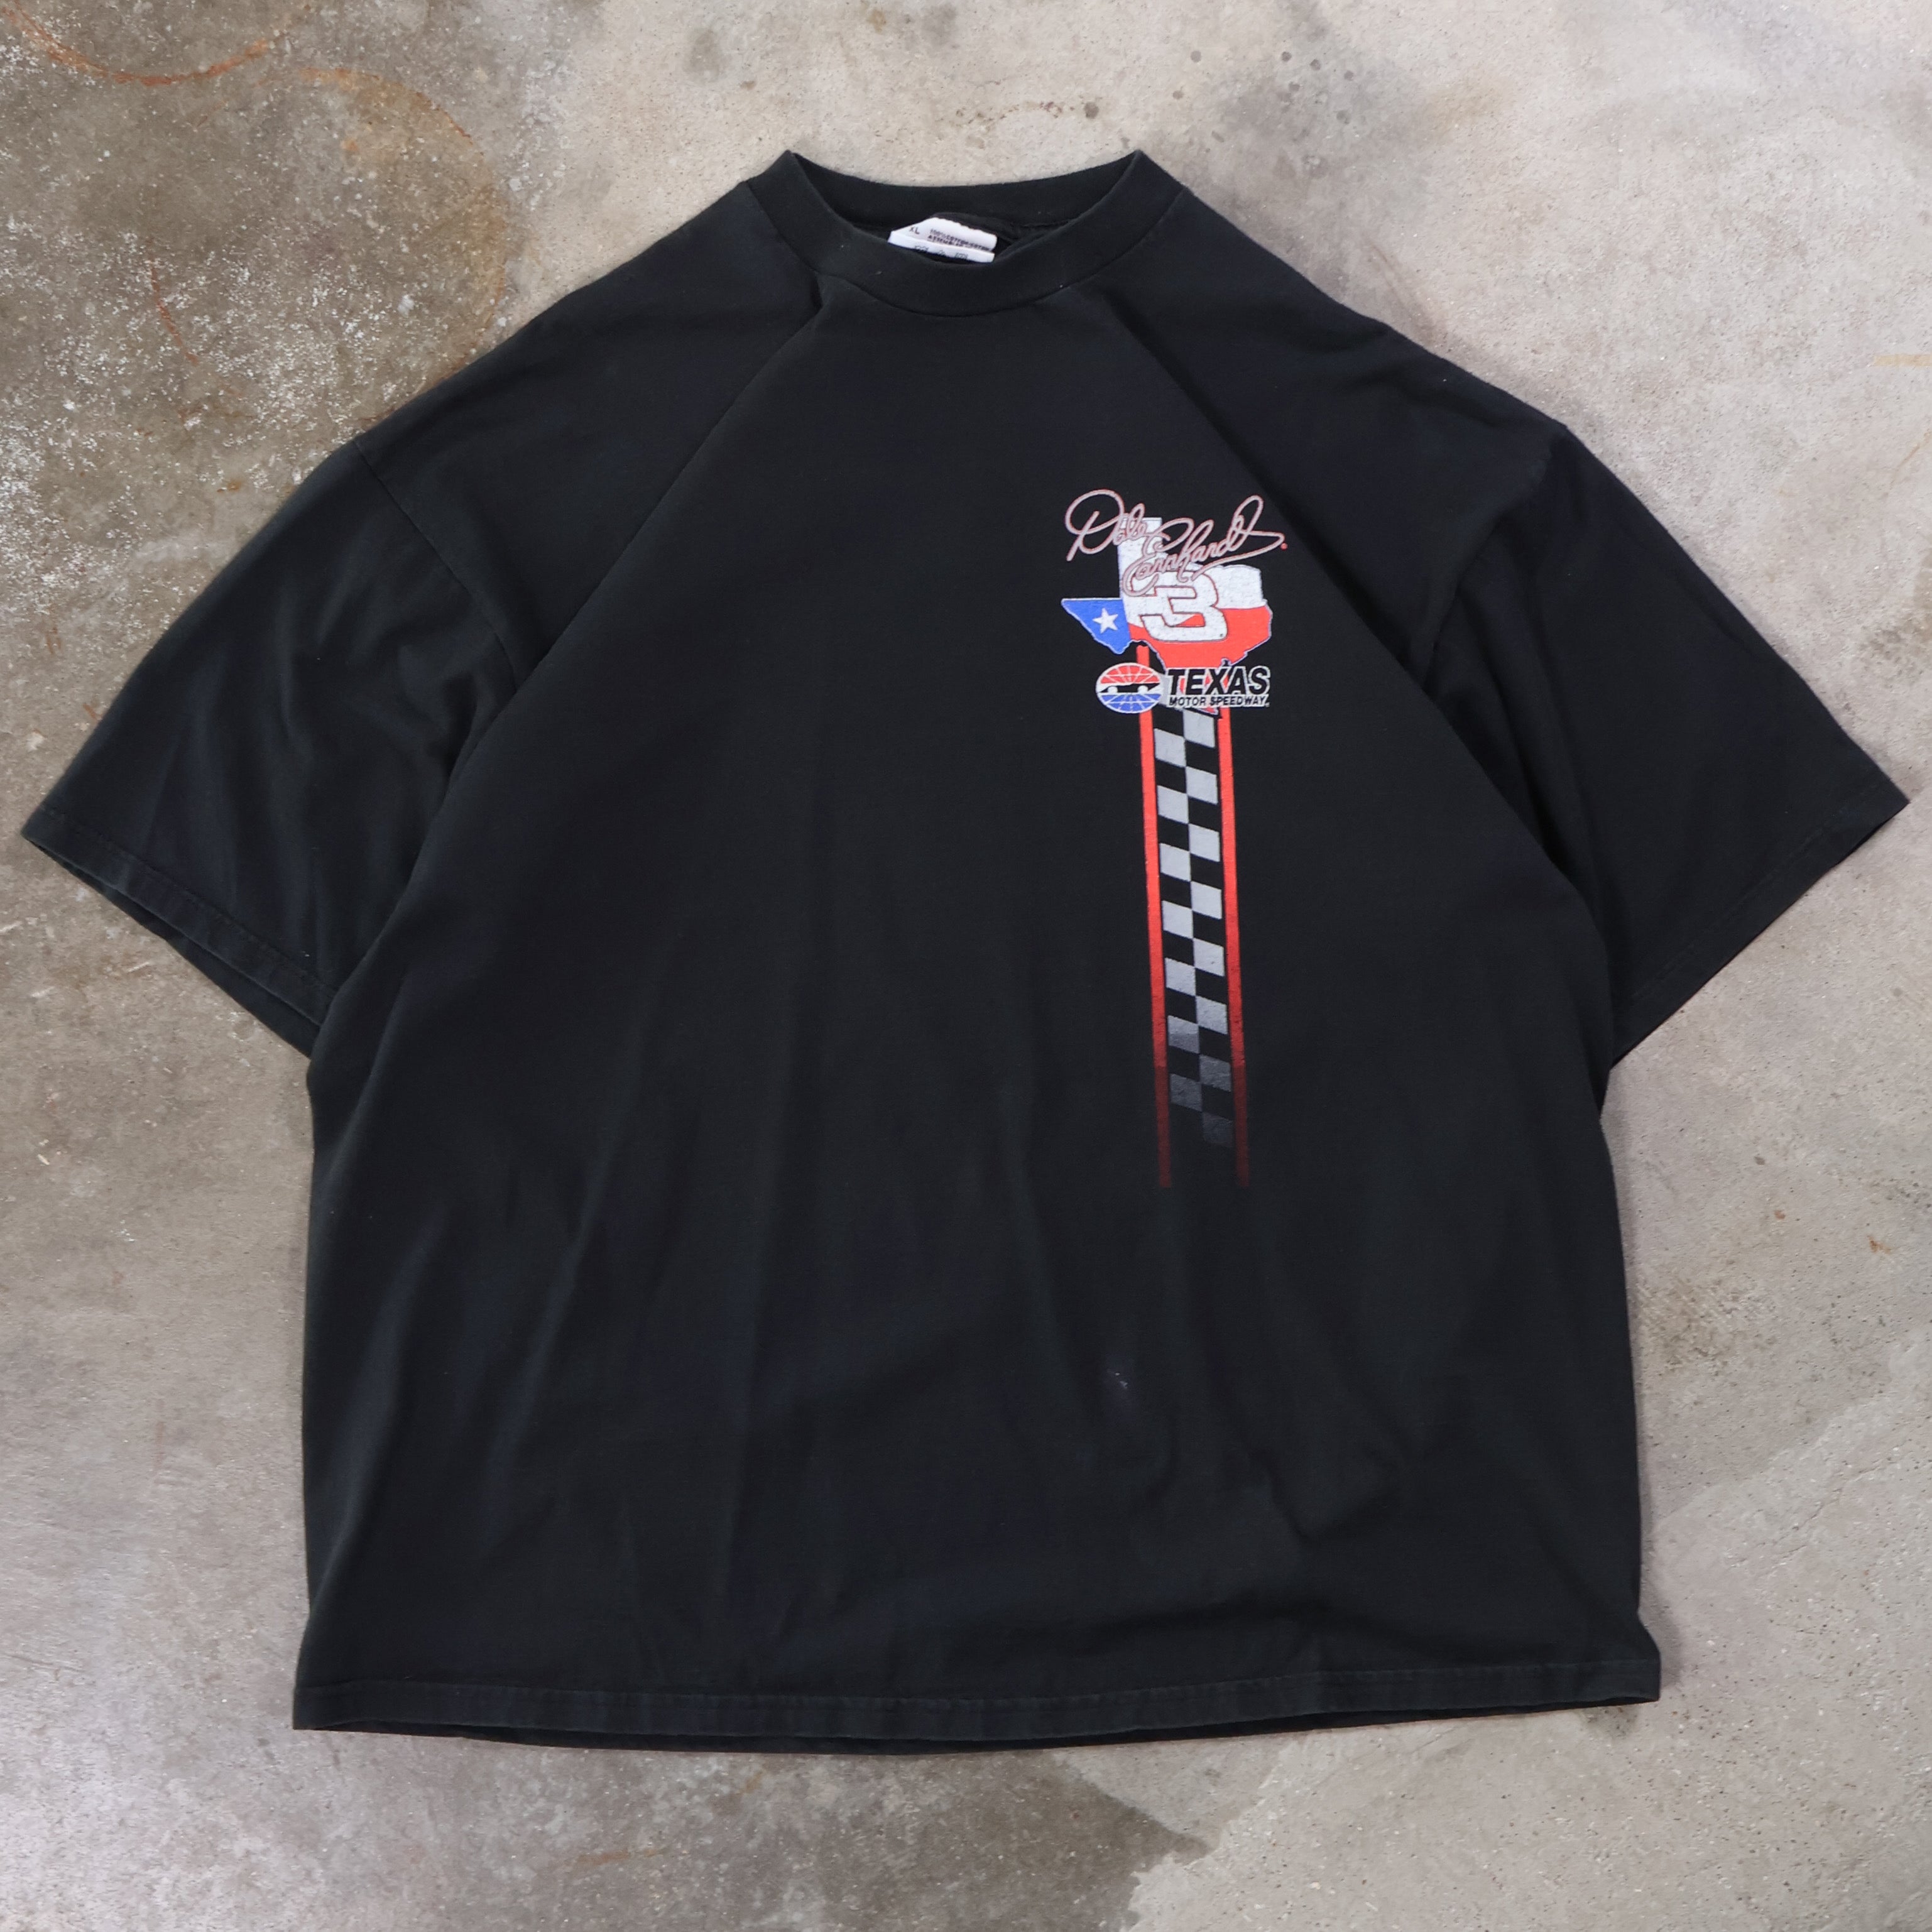 Dale Earnhardt Texas Motor Speedway T-Shirt 90s (XL)